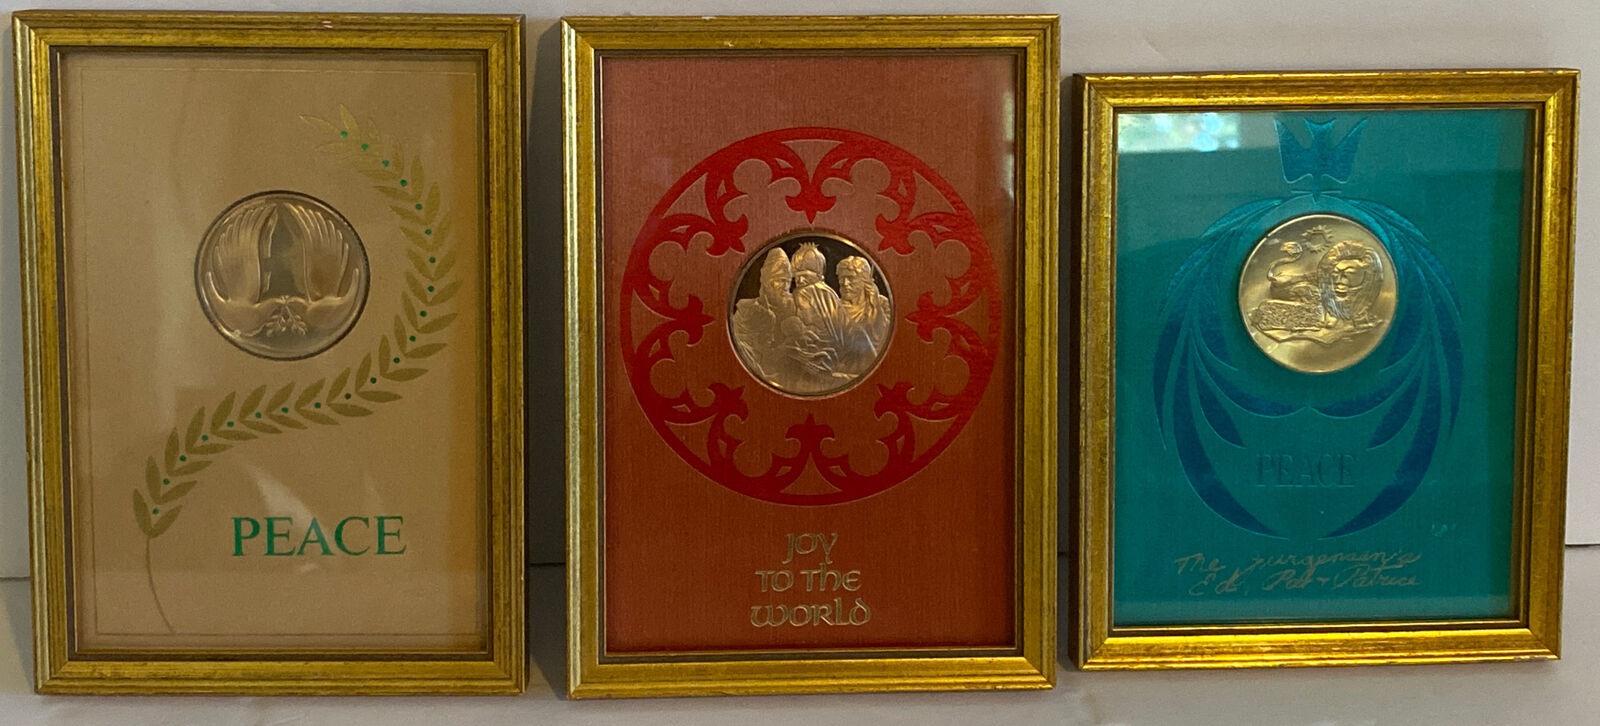 Franklin Mint Framed Christmas Medals Vintage Set Of 3